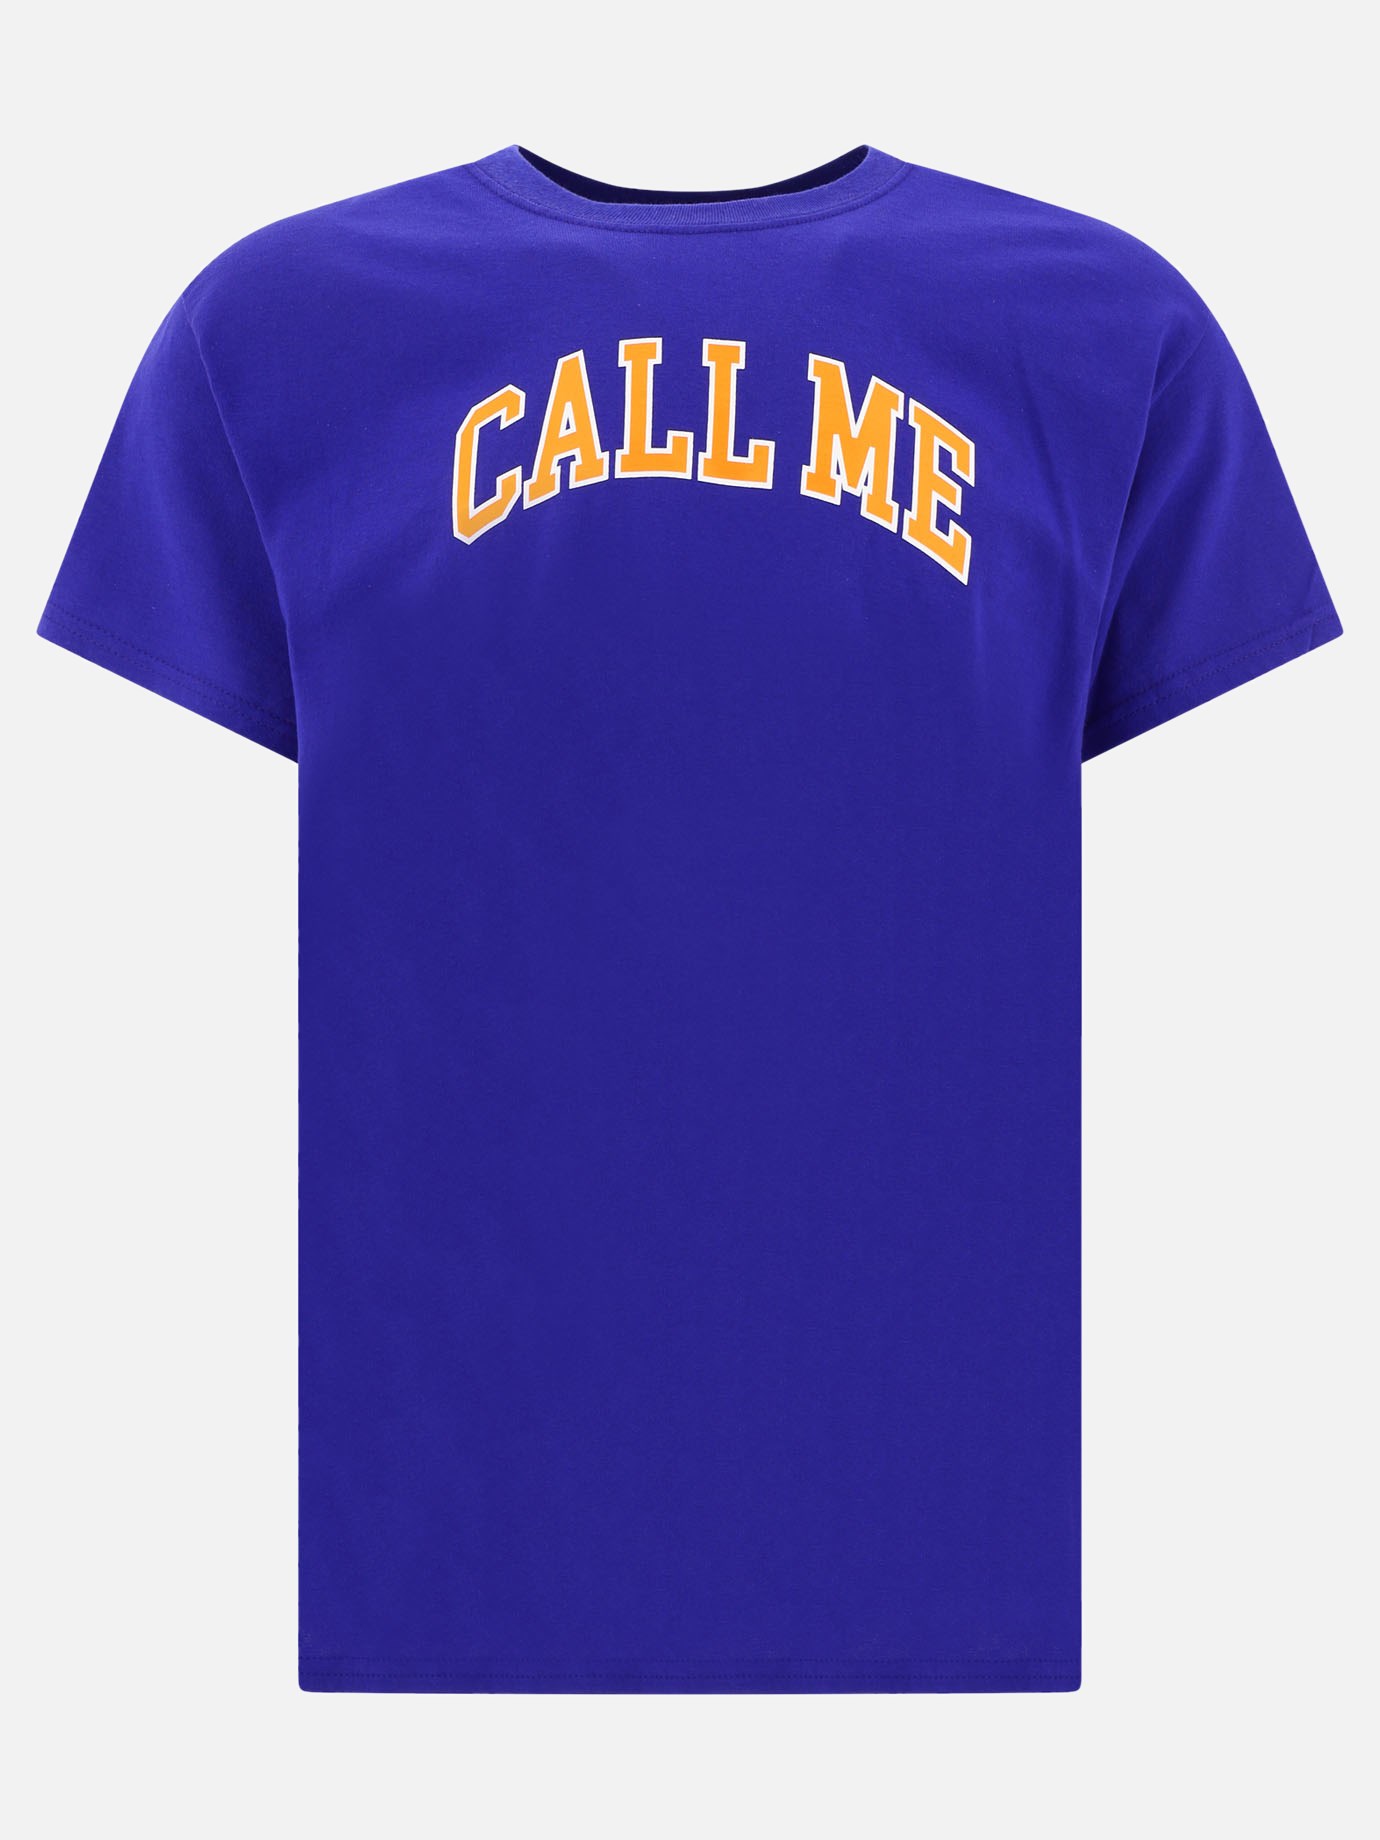  Call Me  t-shirtby Call Me 917 - 4